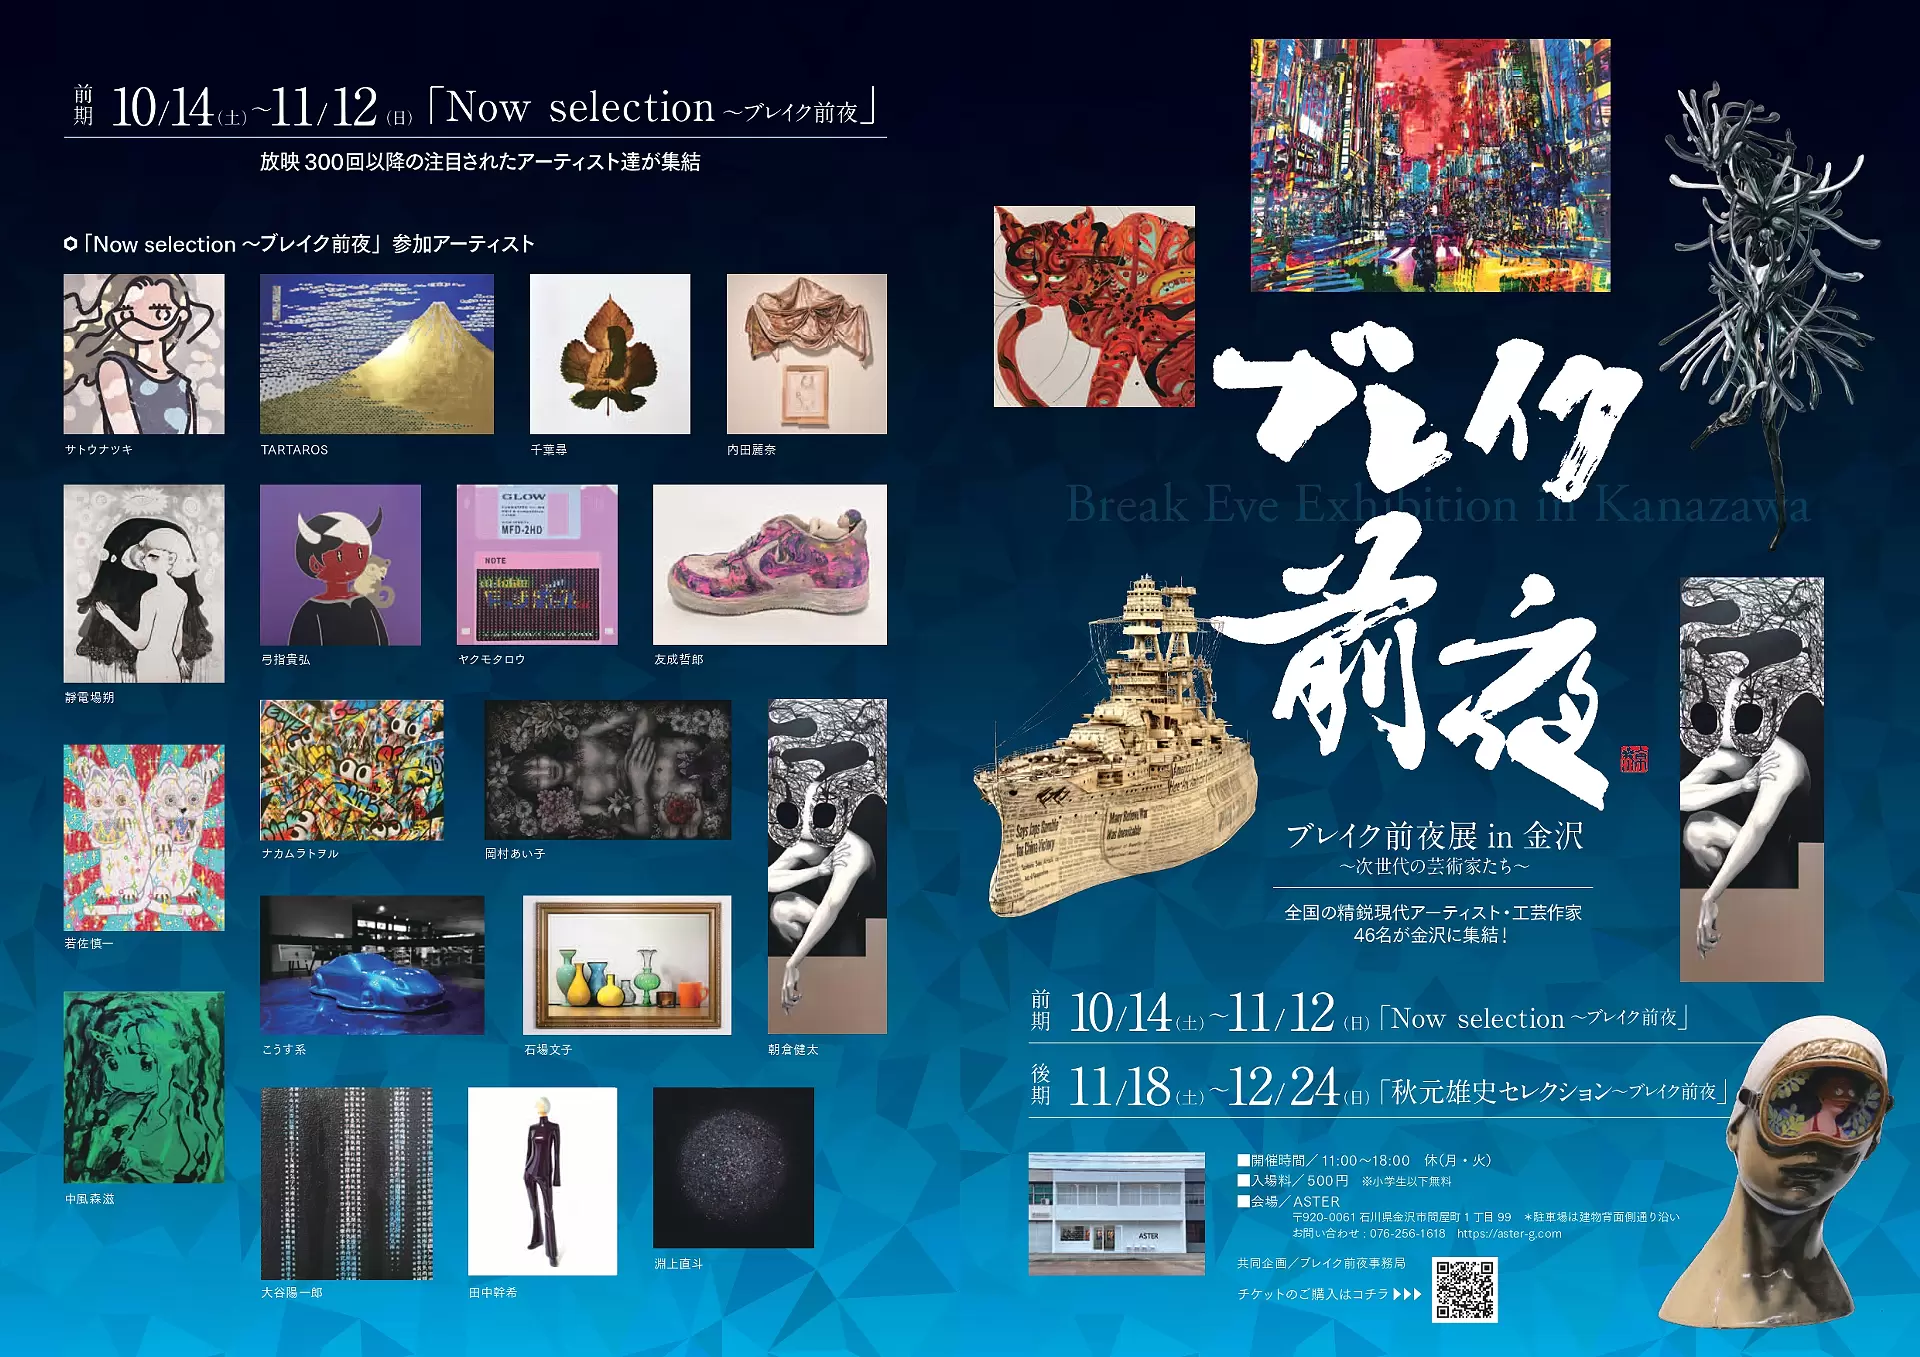 ブレイク前夜展in金沢 | オンラインチケット販売 | ArtSticker